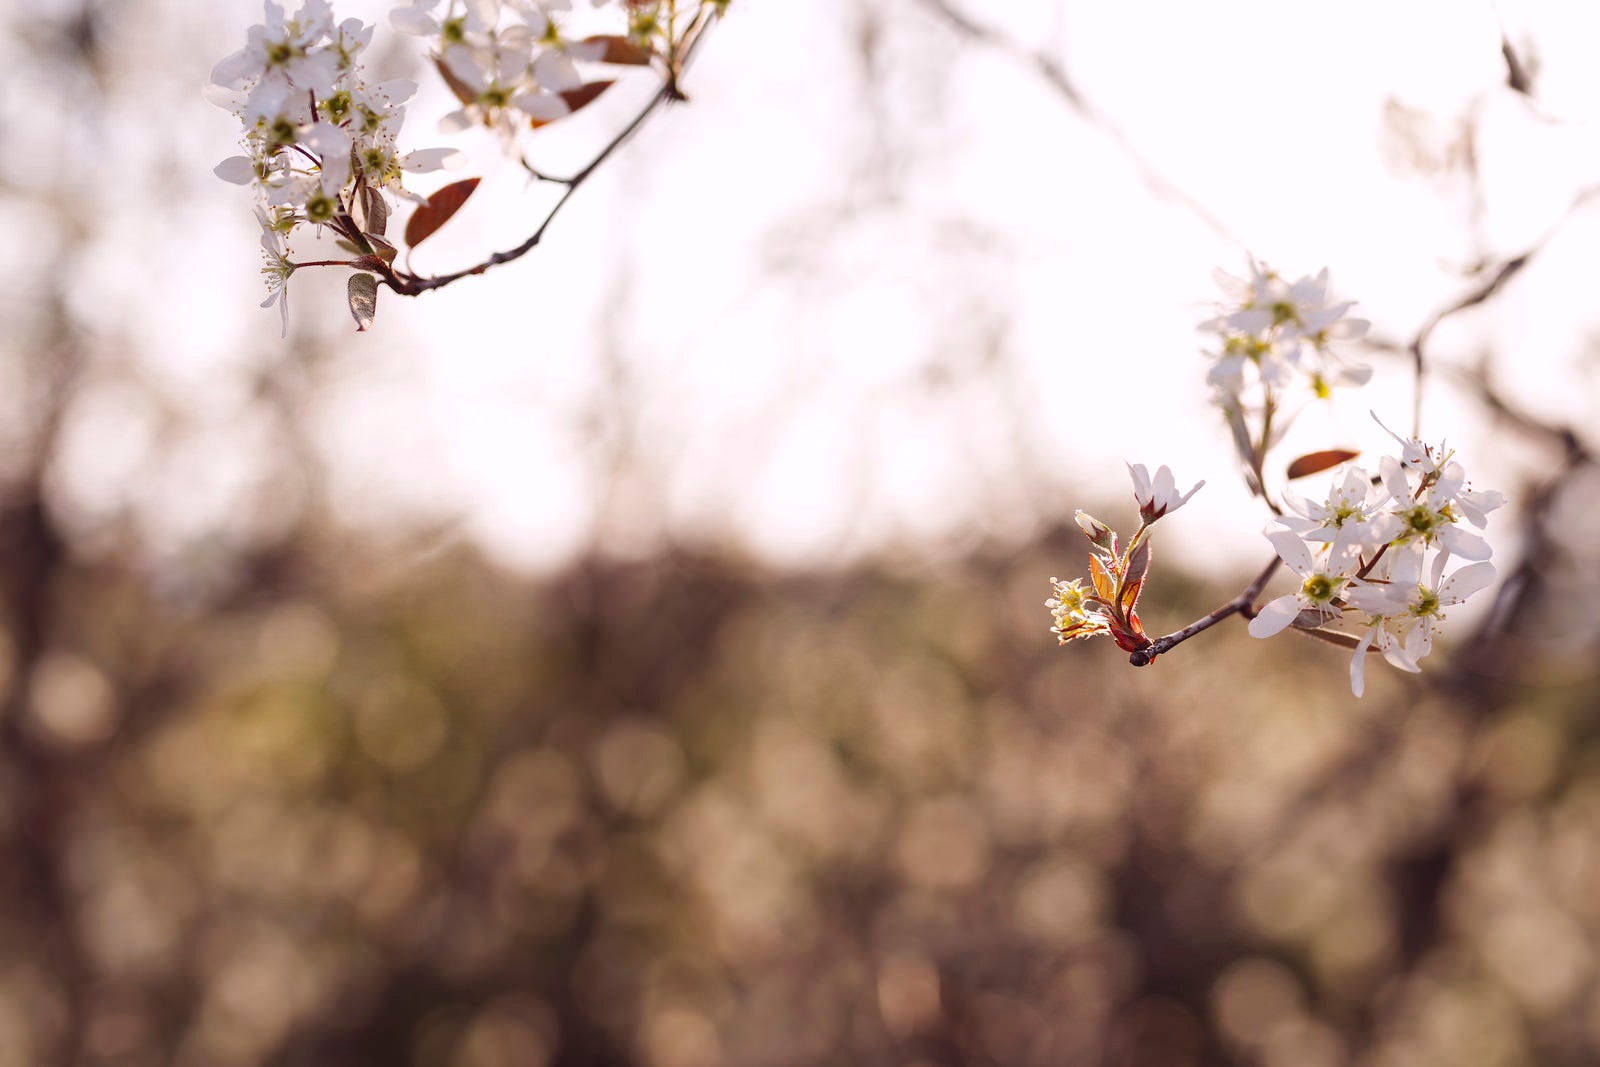 「光の中に浮かび上がる桜の葉」の写真